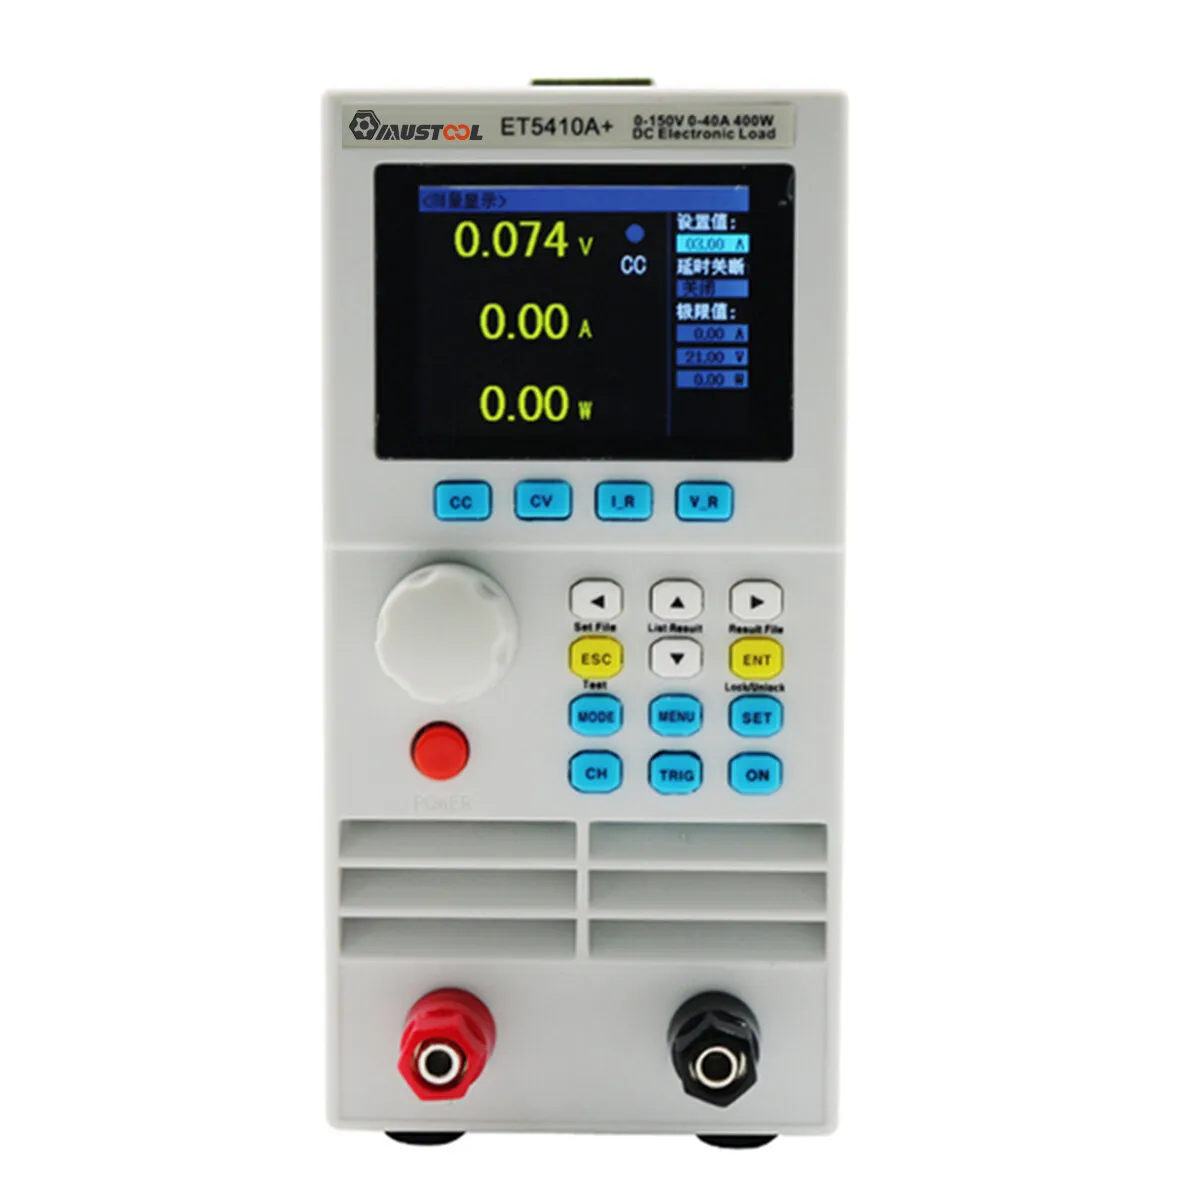 Carico elettronico programmabile Mustool ET5410A+ Controllo digitale del carico Tester elettronico della batteria Misura